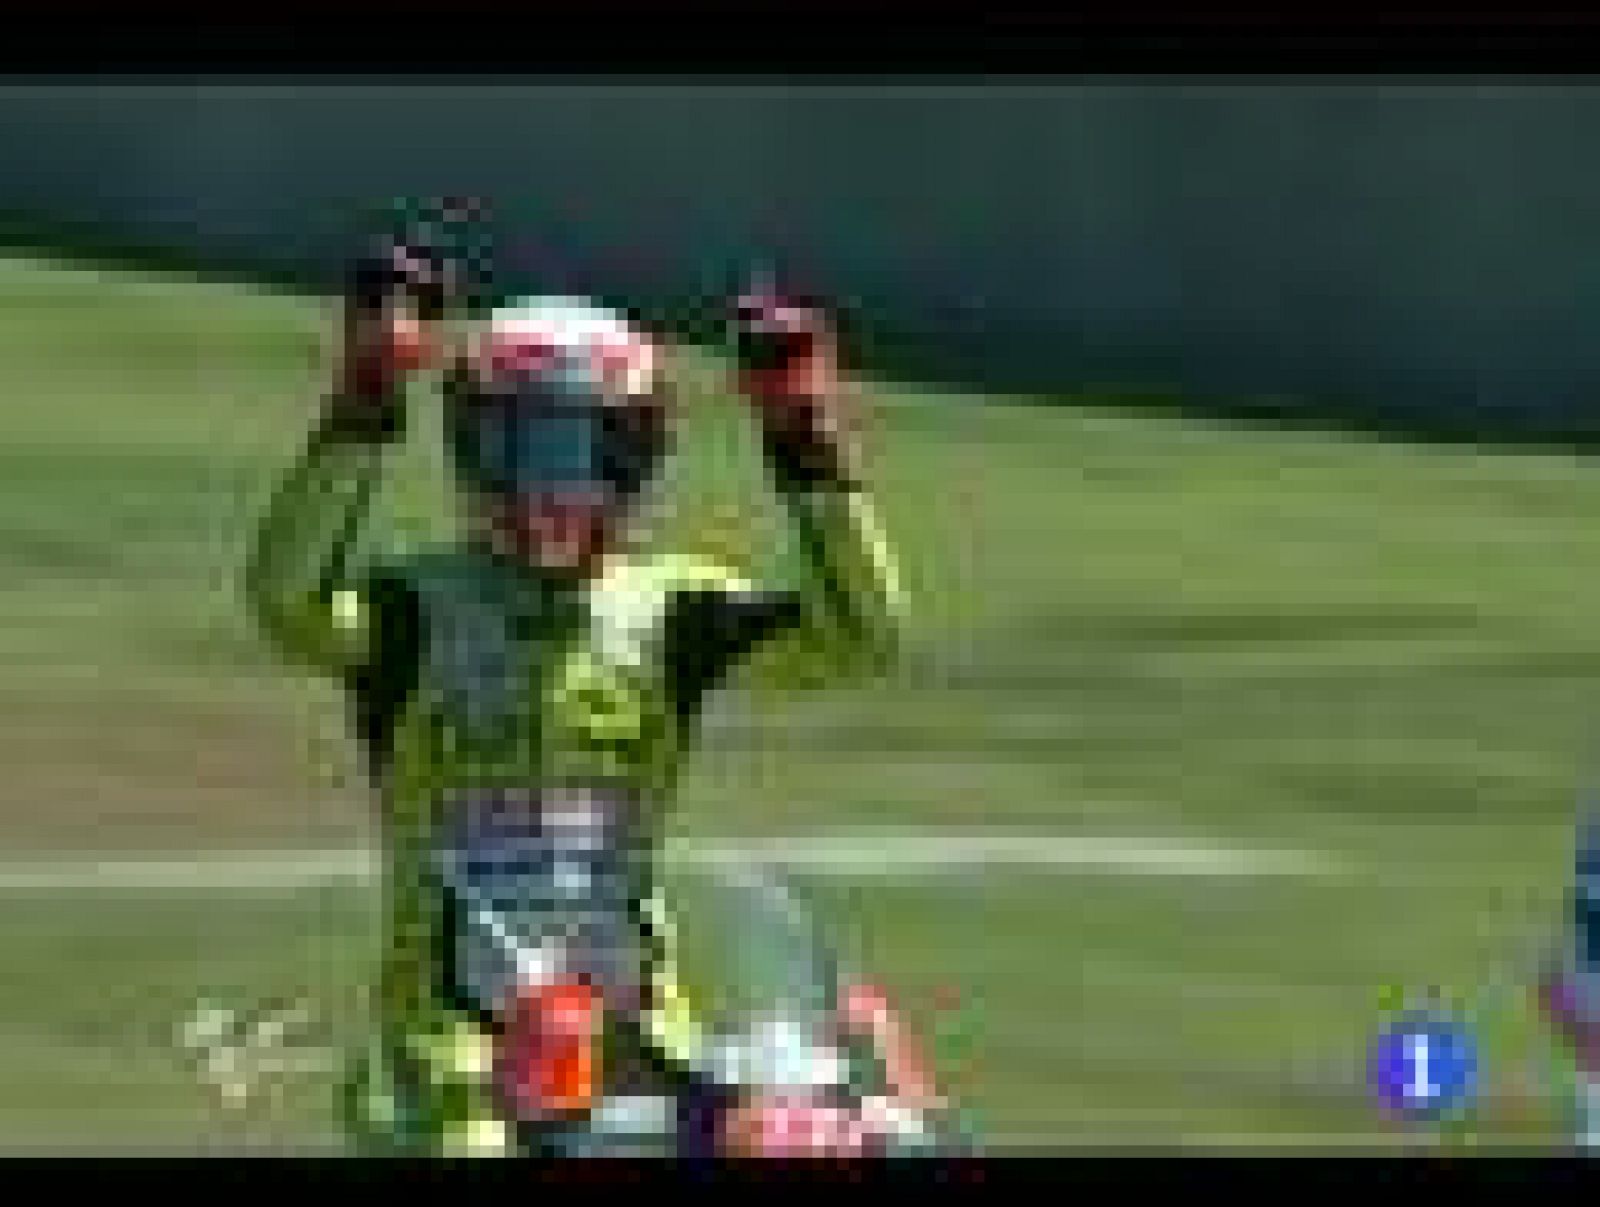 Nic Terol ha sido el ganador de la carrera de 125cc por delante de Johann Zarco y ha abierto el plento de victorias españolas en la Toscana.